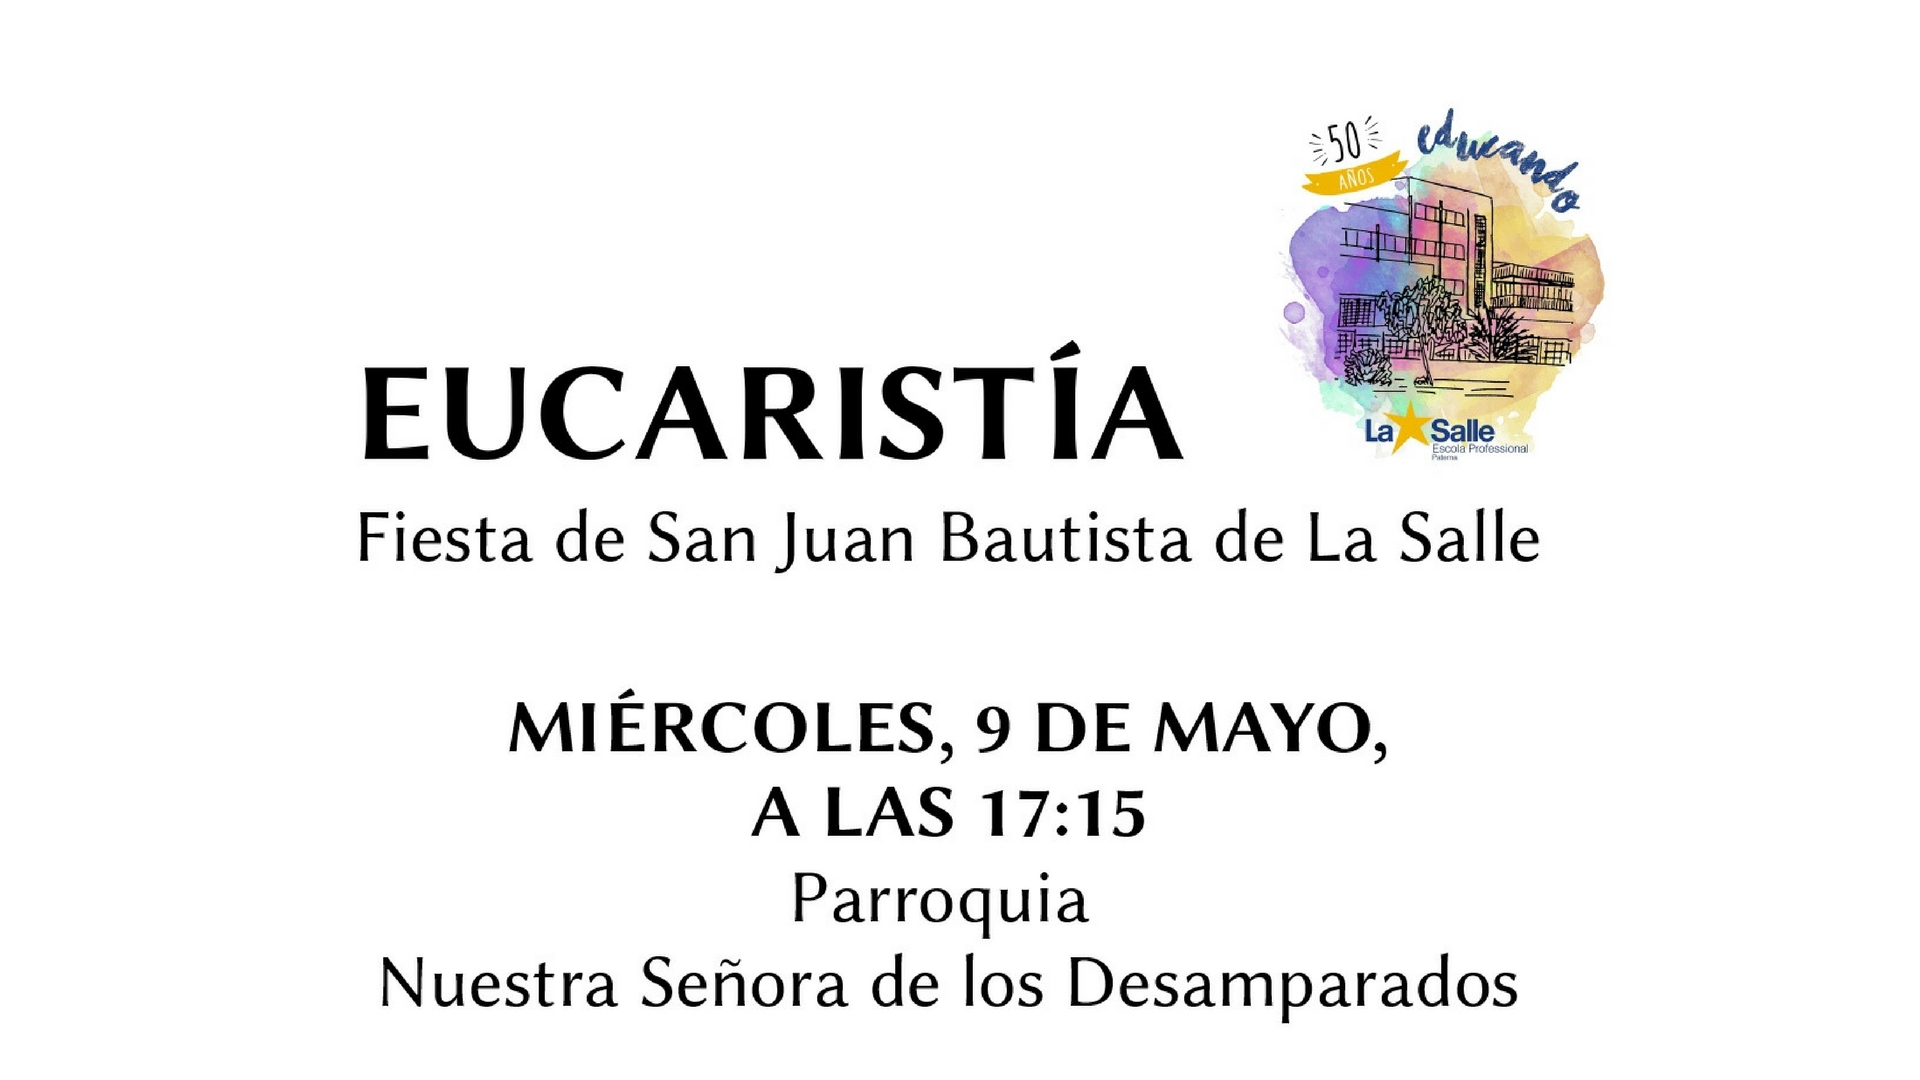 Eucaristía en honor a San Juan Bautista de La Salle el próximo miércoles